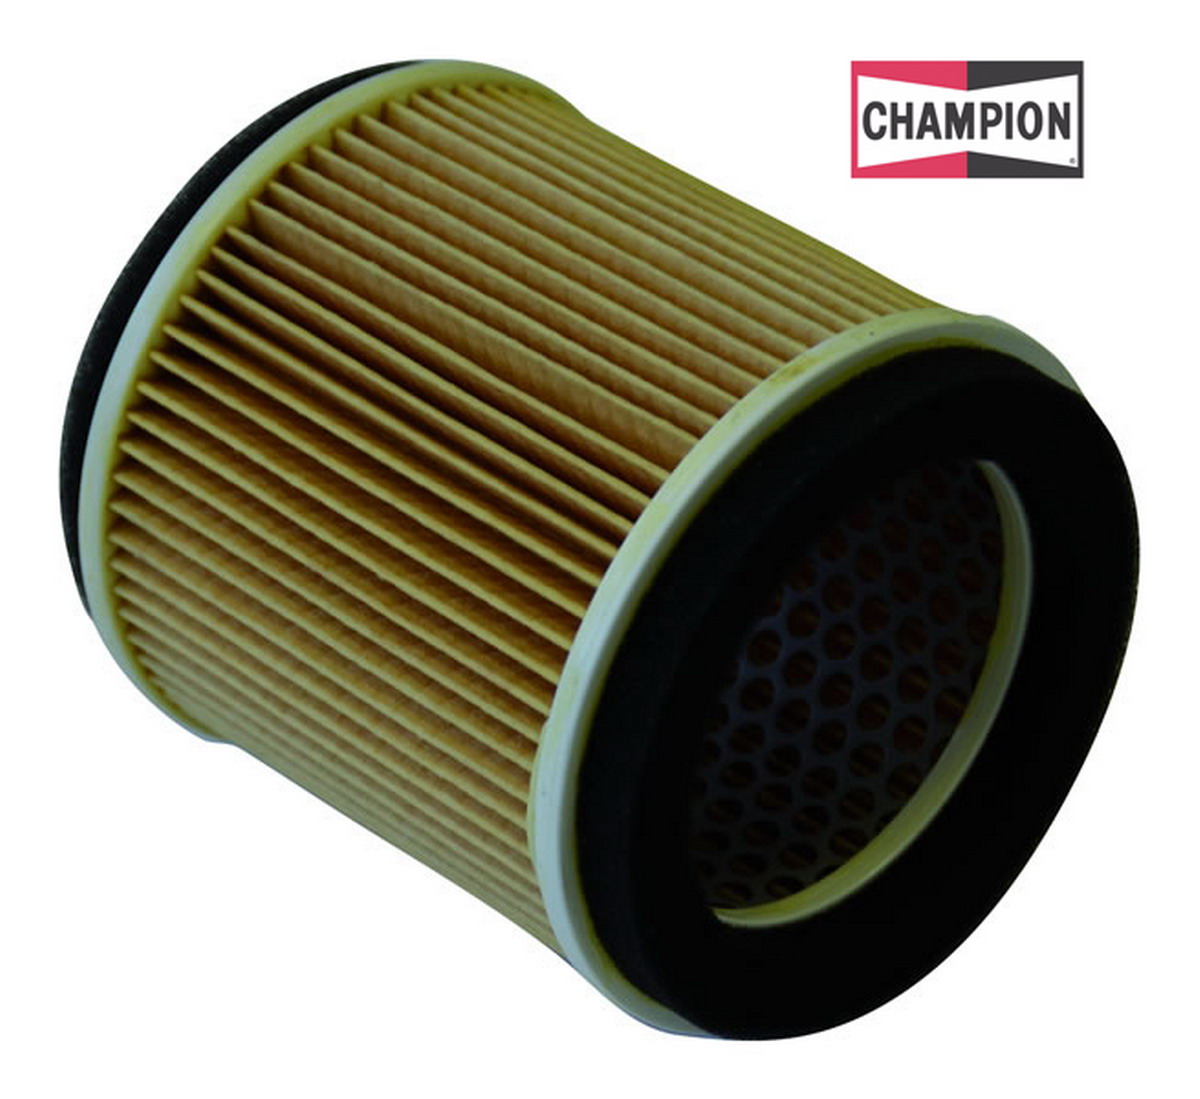 Obrázek produktu Vzduchový filtr CHAMPION Y337/301 100604845